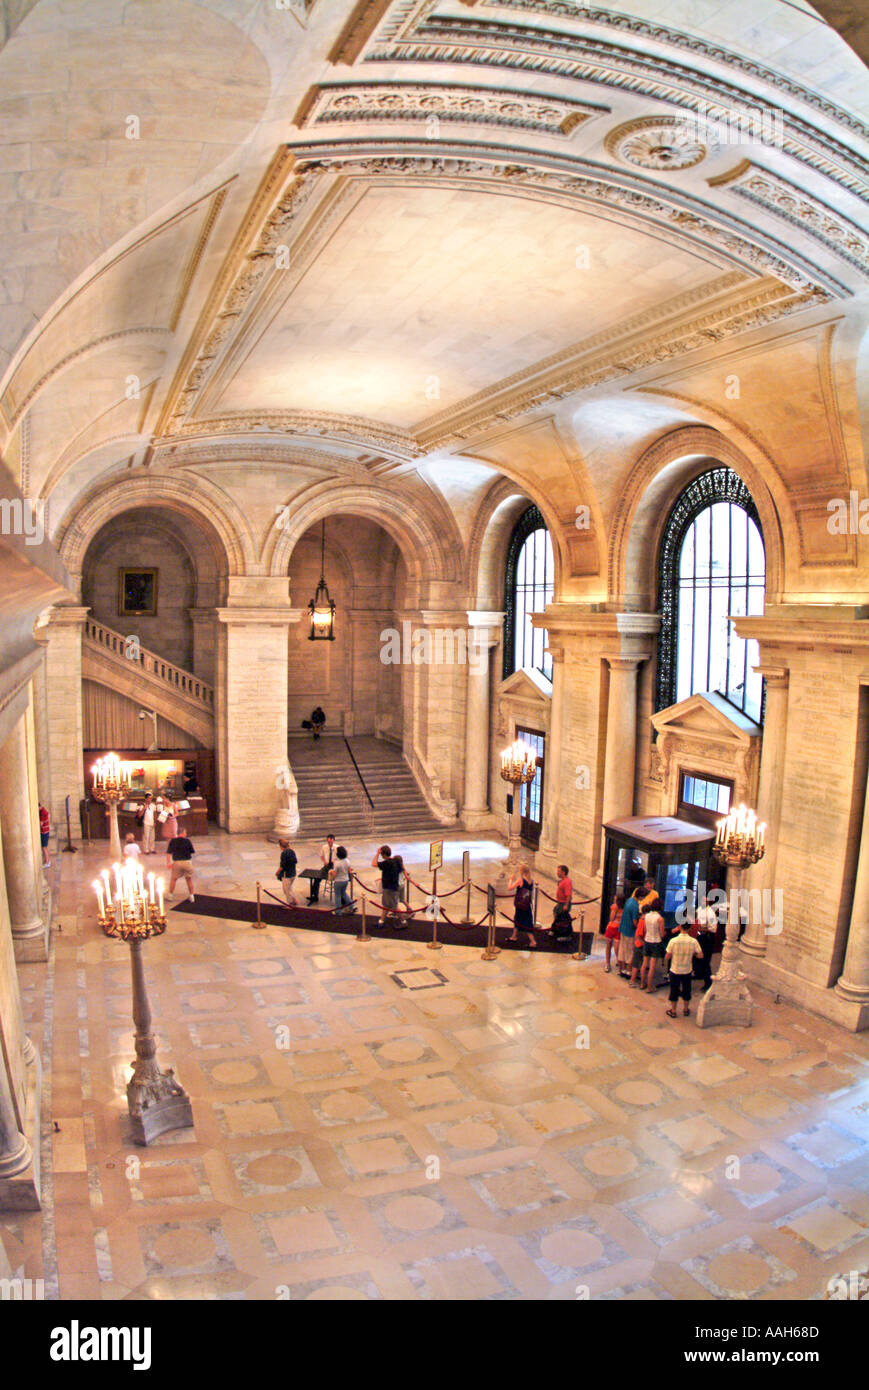 Interior lobby and rotunda of New York City Public Library Stock Photo